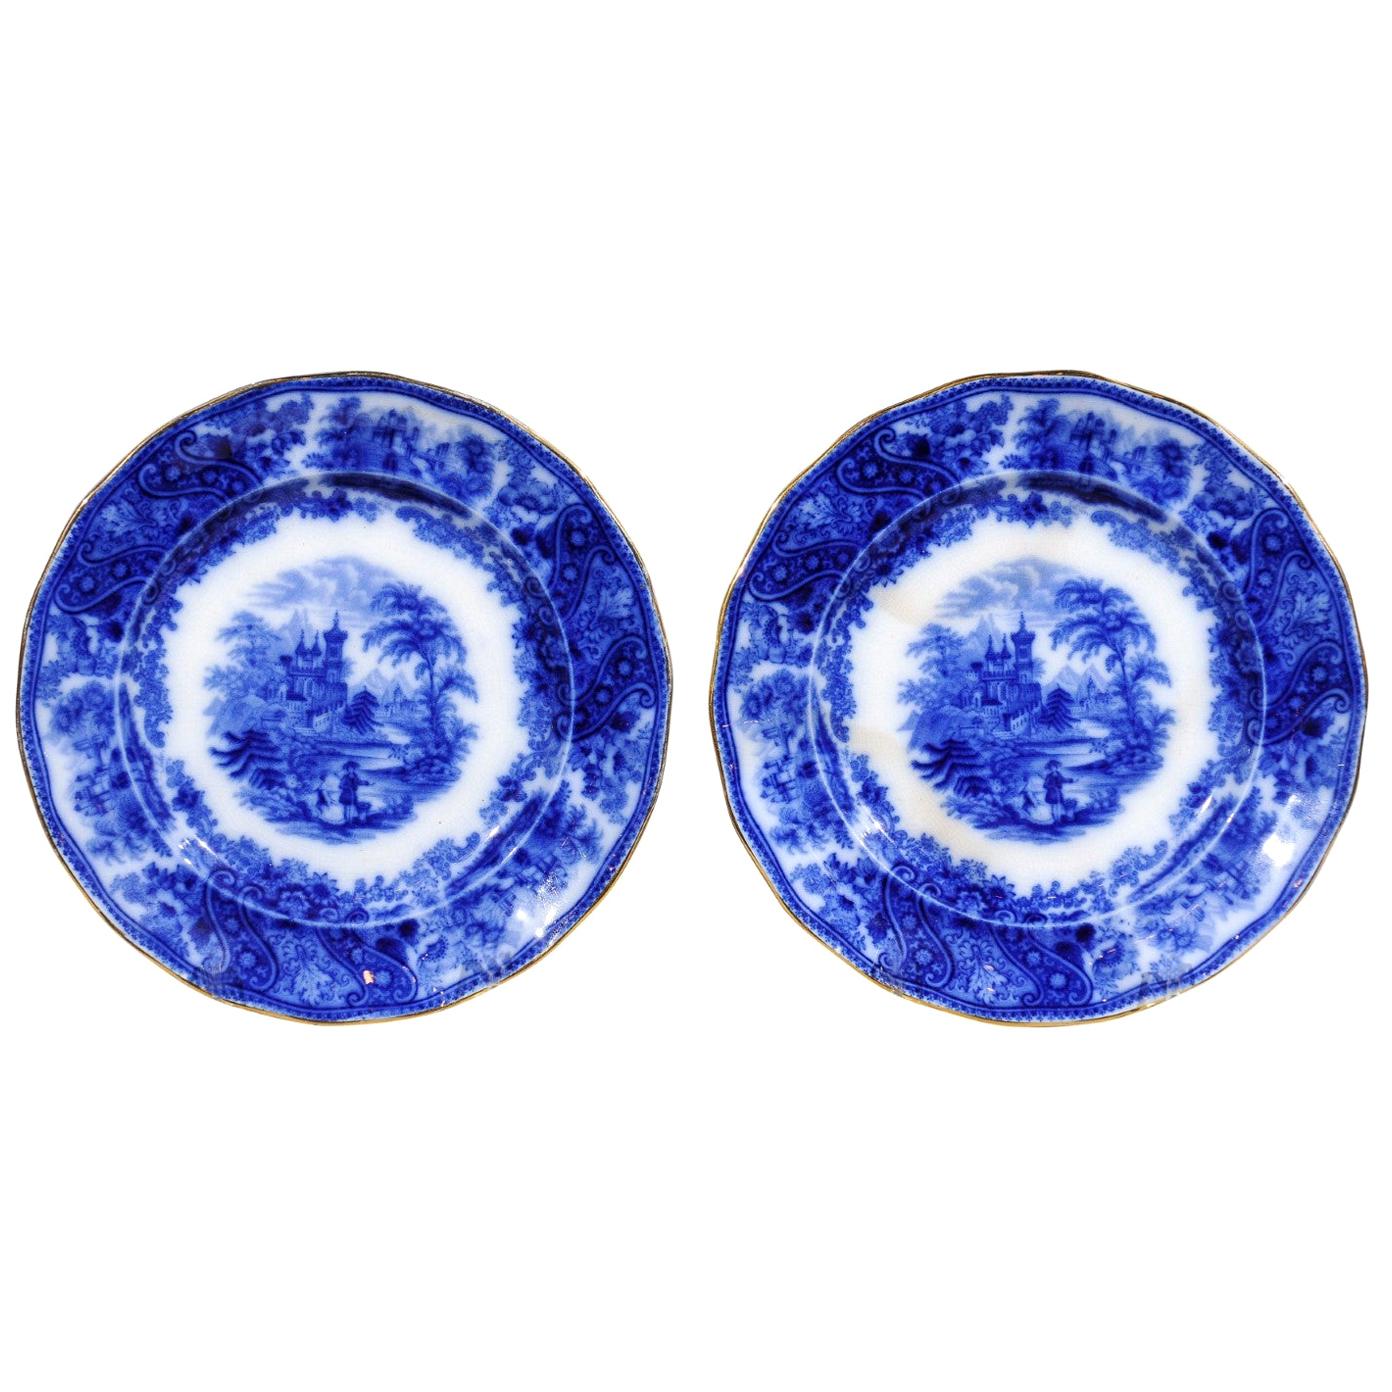 Zwei englische Burgess & Leigh Middleport-Teller mit fließenden blauen Nonpareil-Mustern